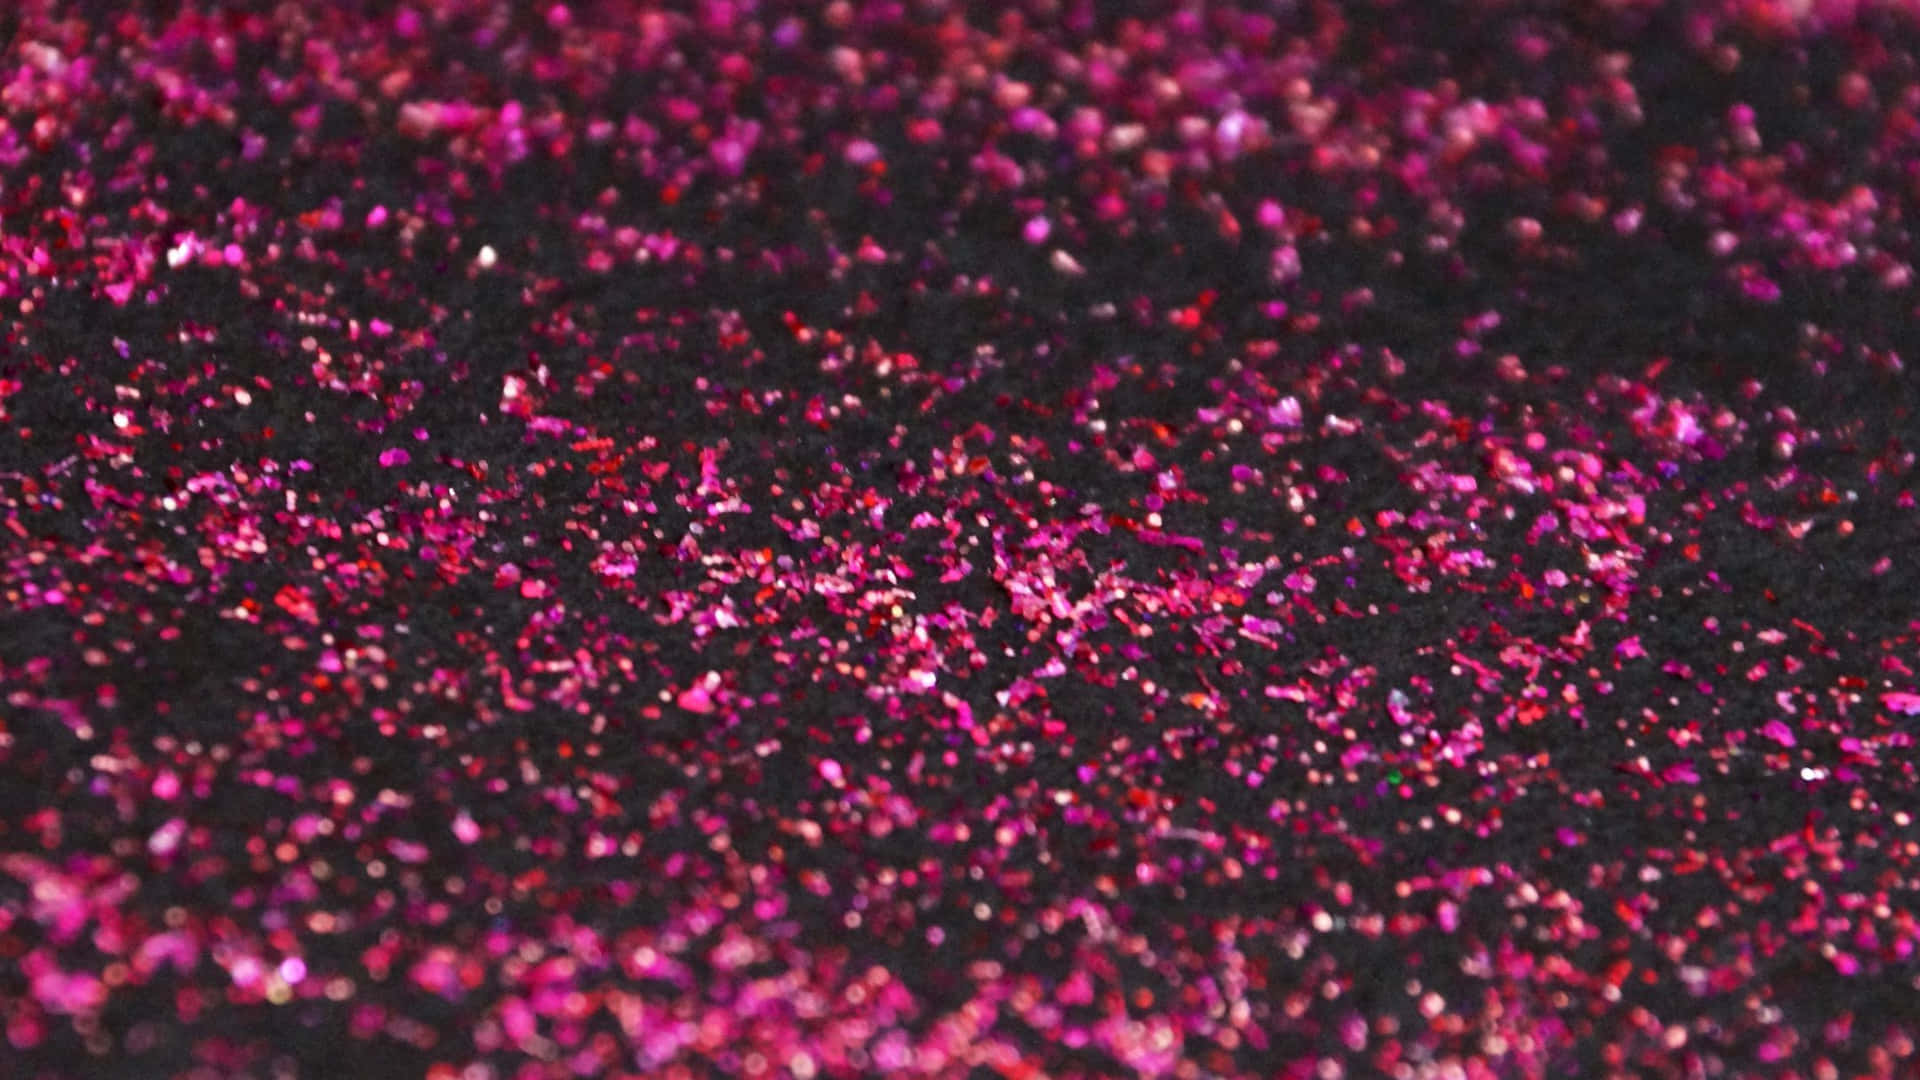 Unrico Y Sedoso Desenfoque De Color Rosa Oscuro, Añadiendo Un Toque De Color Y Vitalidad A Cualquier Espacio.